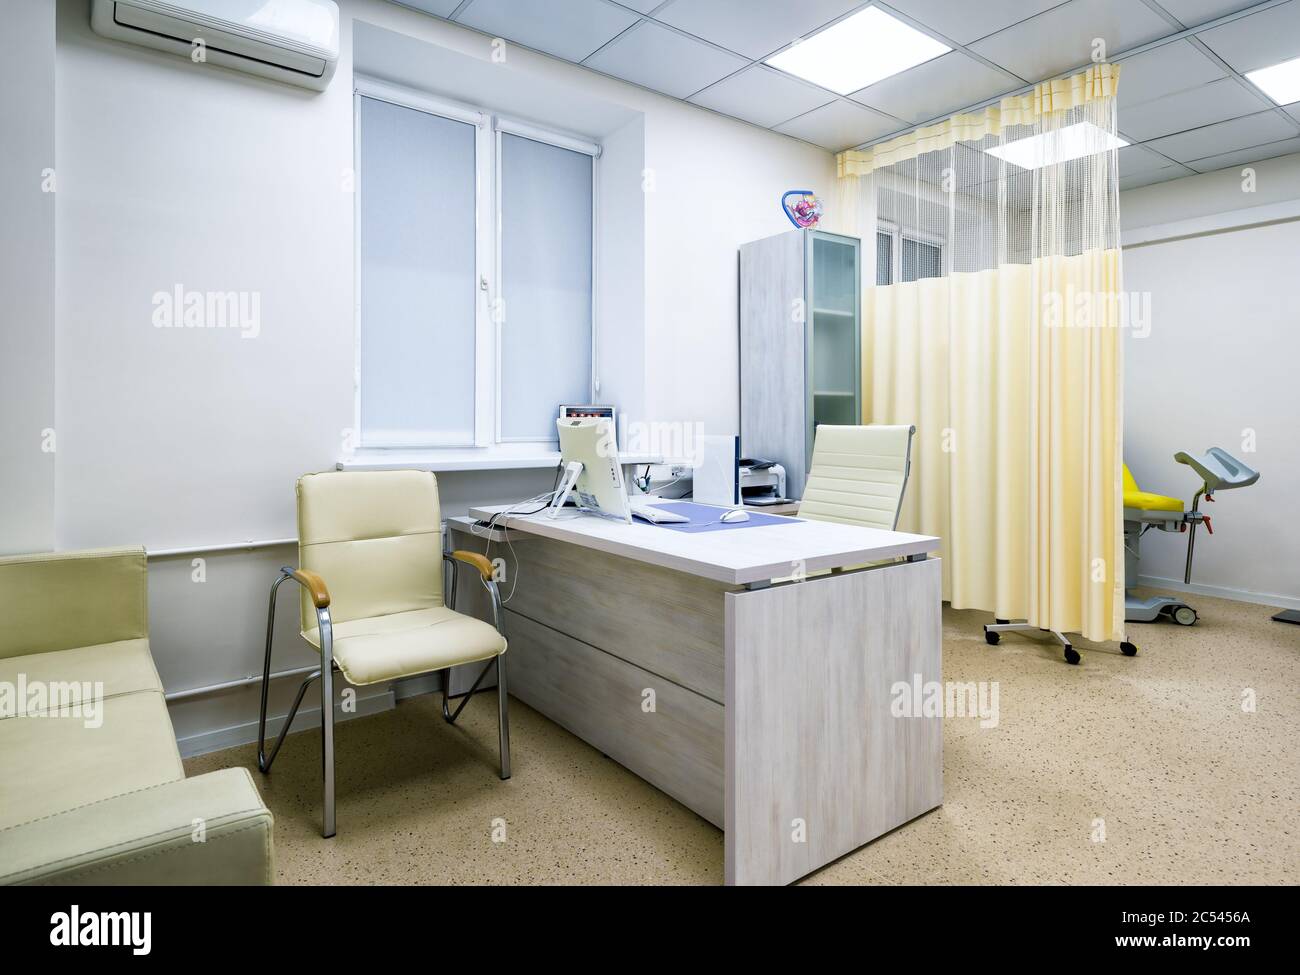 Moskau - 15. September 2017: Moderne Inneneinrichtung`s Arztpraxis des Gynäkologen in einer Klinik. Stockfoto